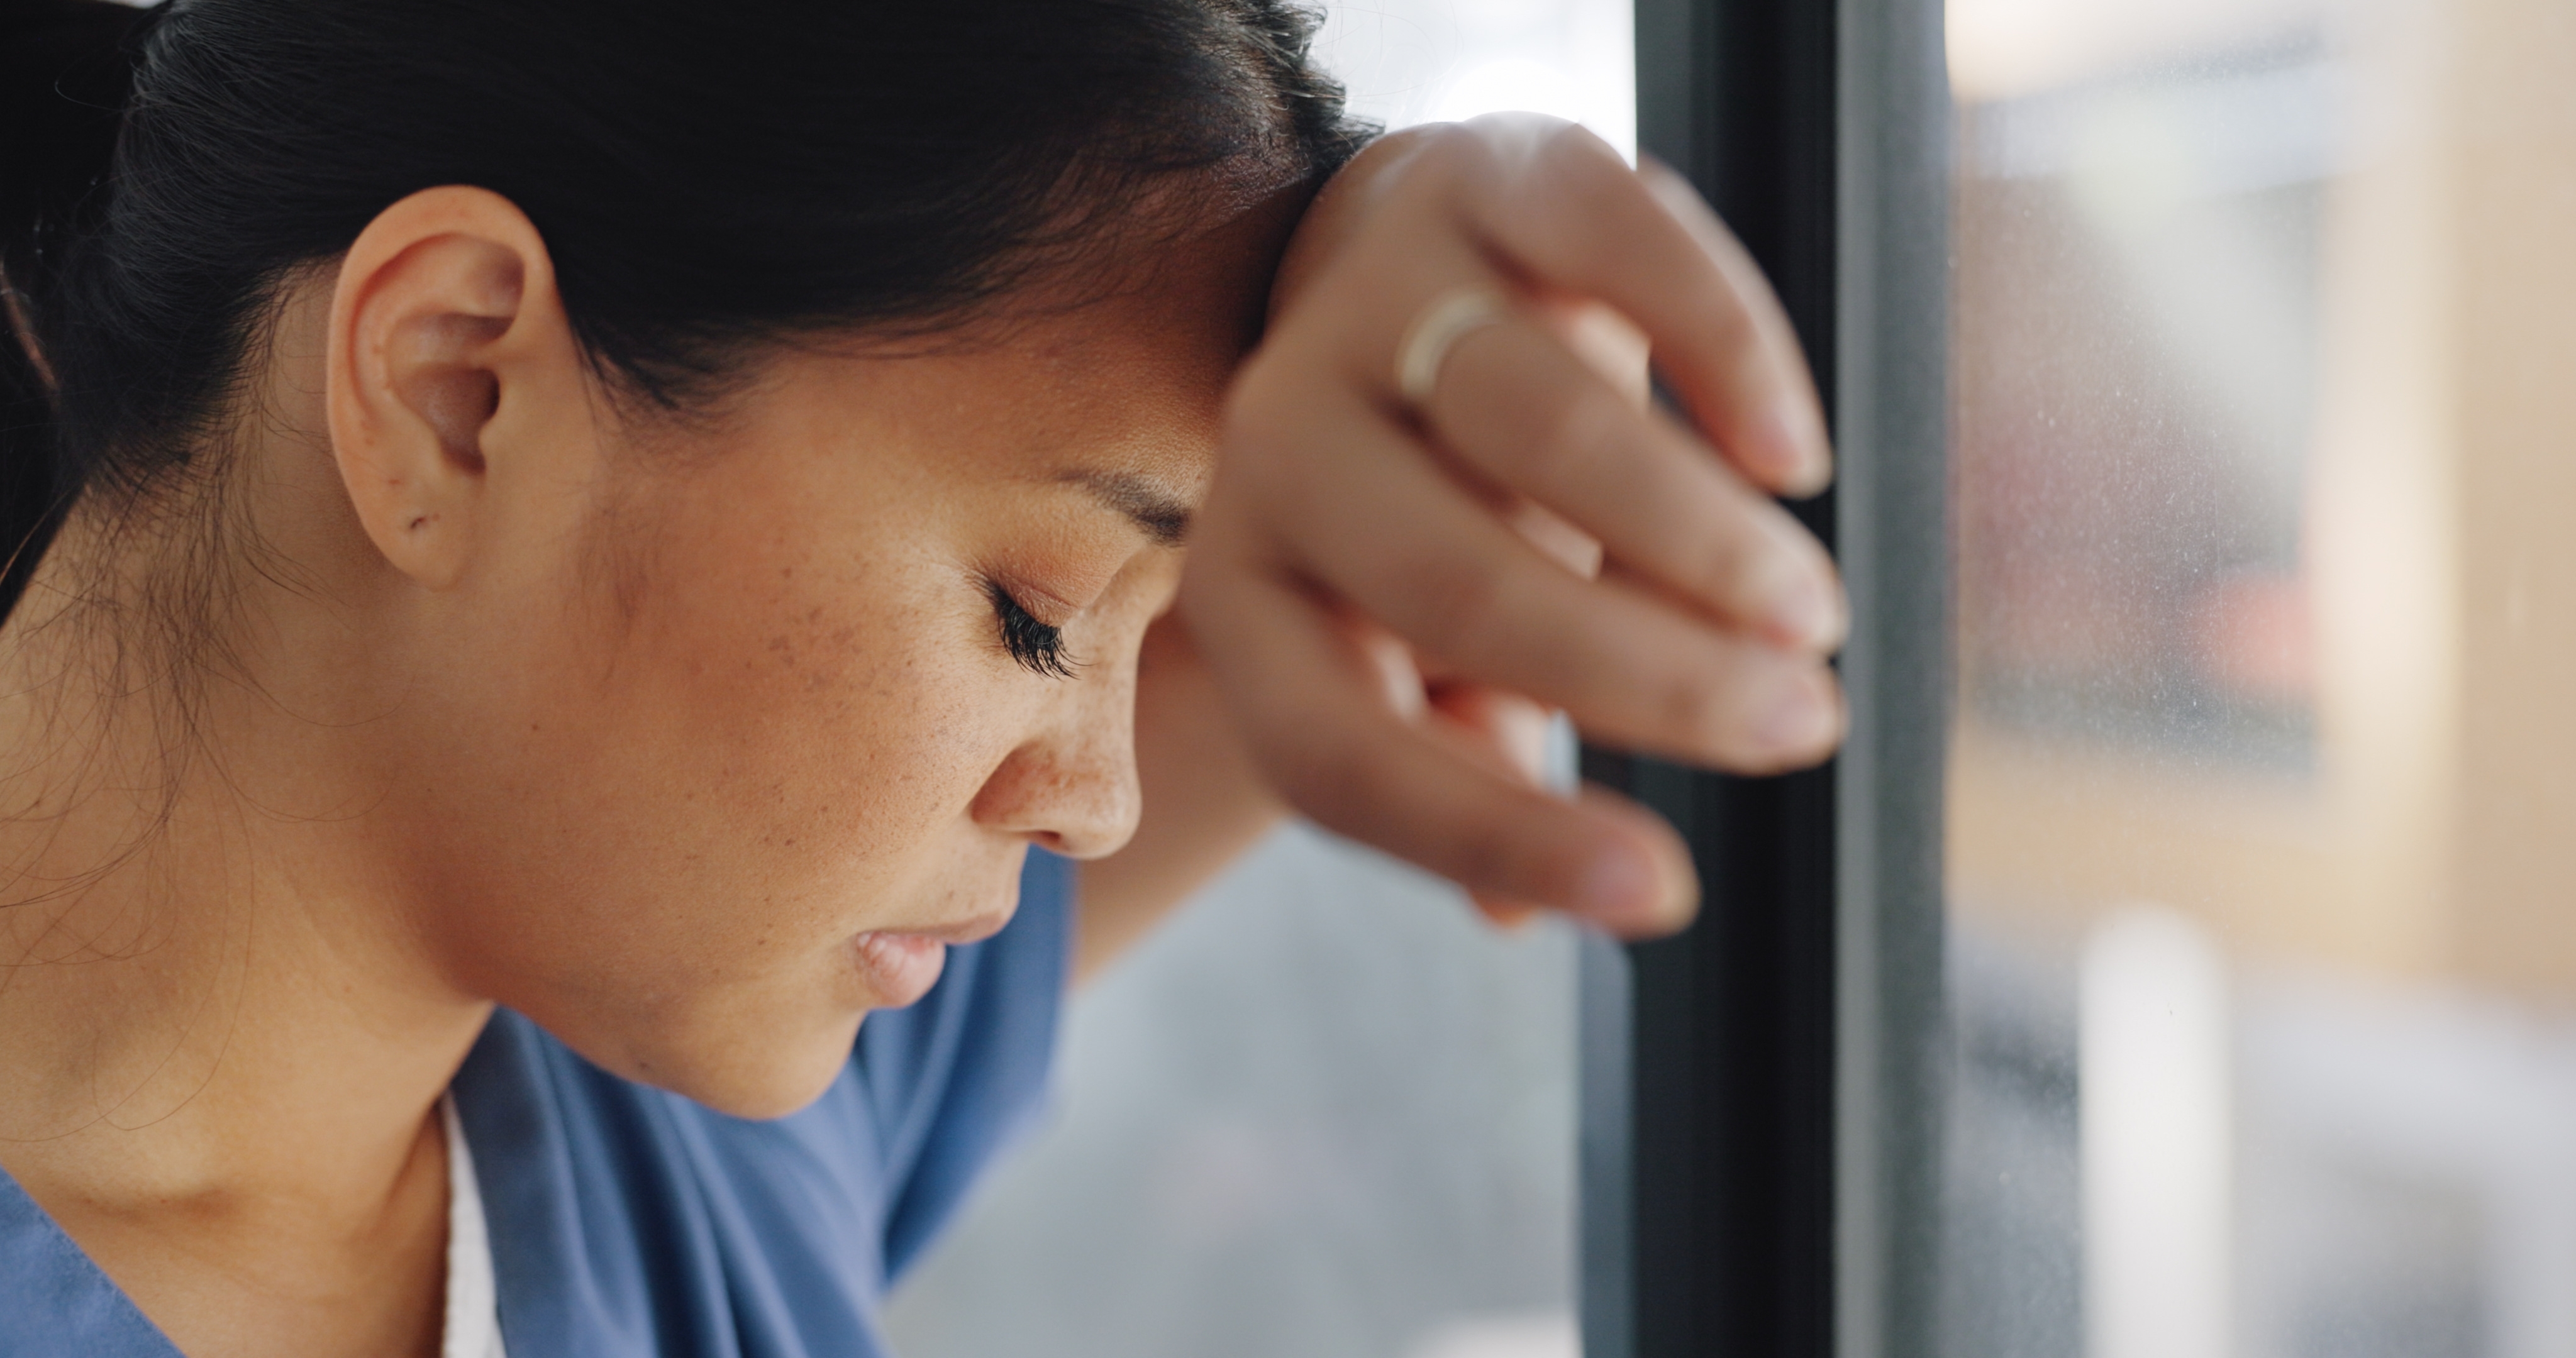 A dejected nurse talking a breather | Source: Shutterstock